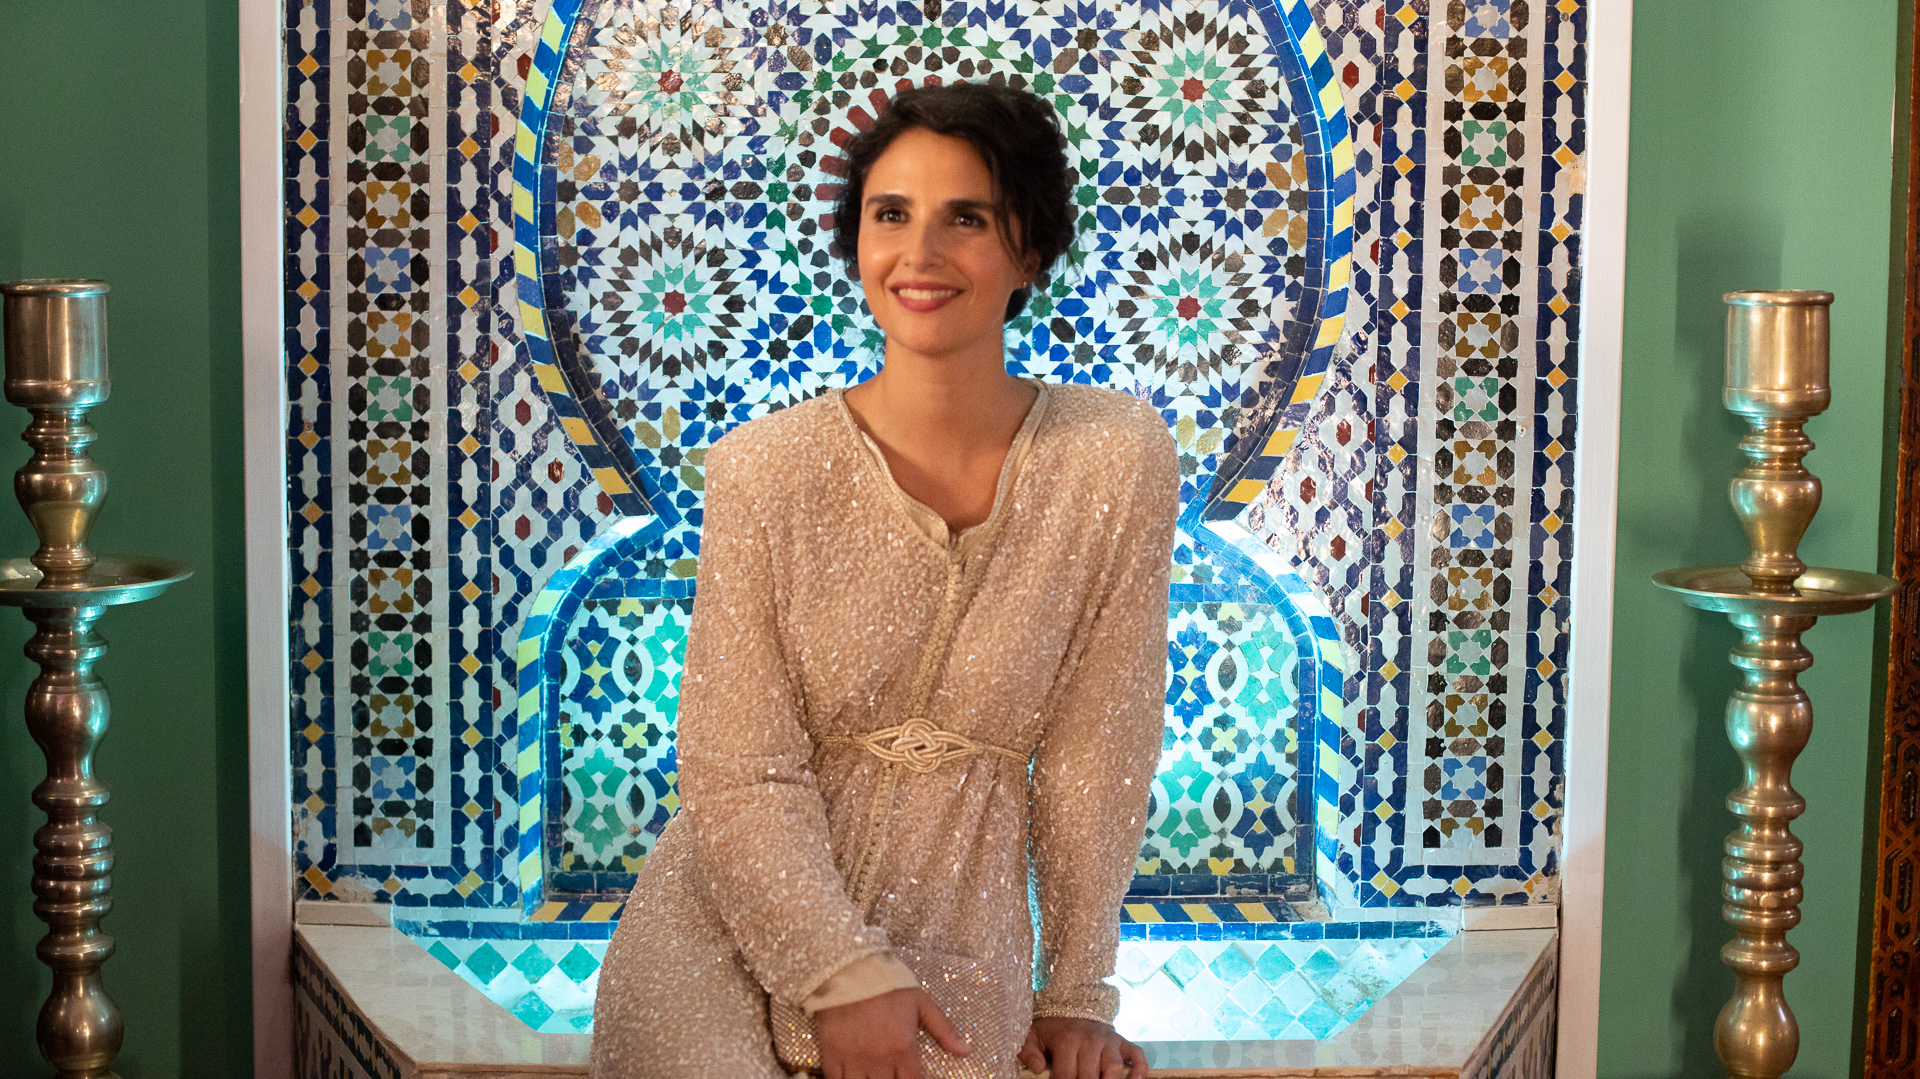 Meskina Cast on Netflix - Maryam Hassouni as Leyla Idrissi